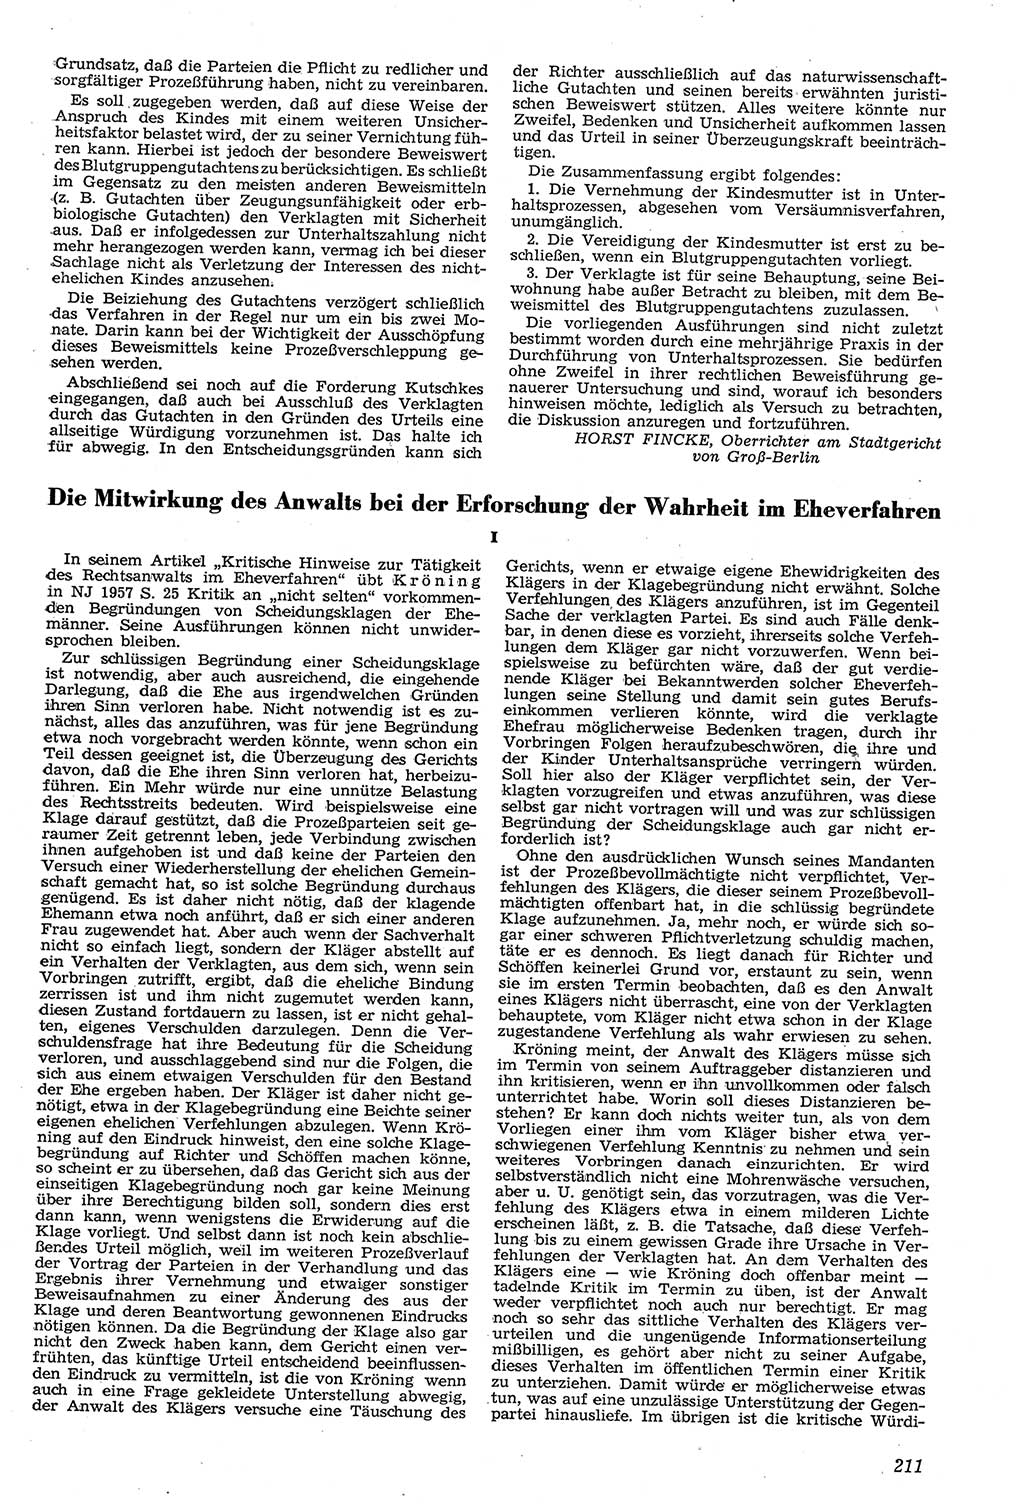 Neue Justiz (NJ), Zeitschrift für Recht und Rechtswissenschaft [Deutsche Demokratische Republik (DDR)], 11. Jahrgang 1957, Seite 211 (NJ DDR 1957, S. 211)